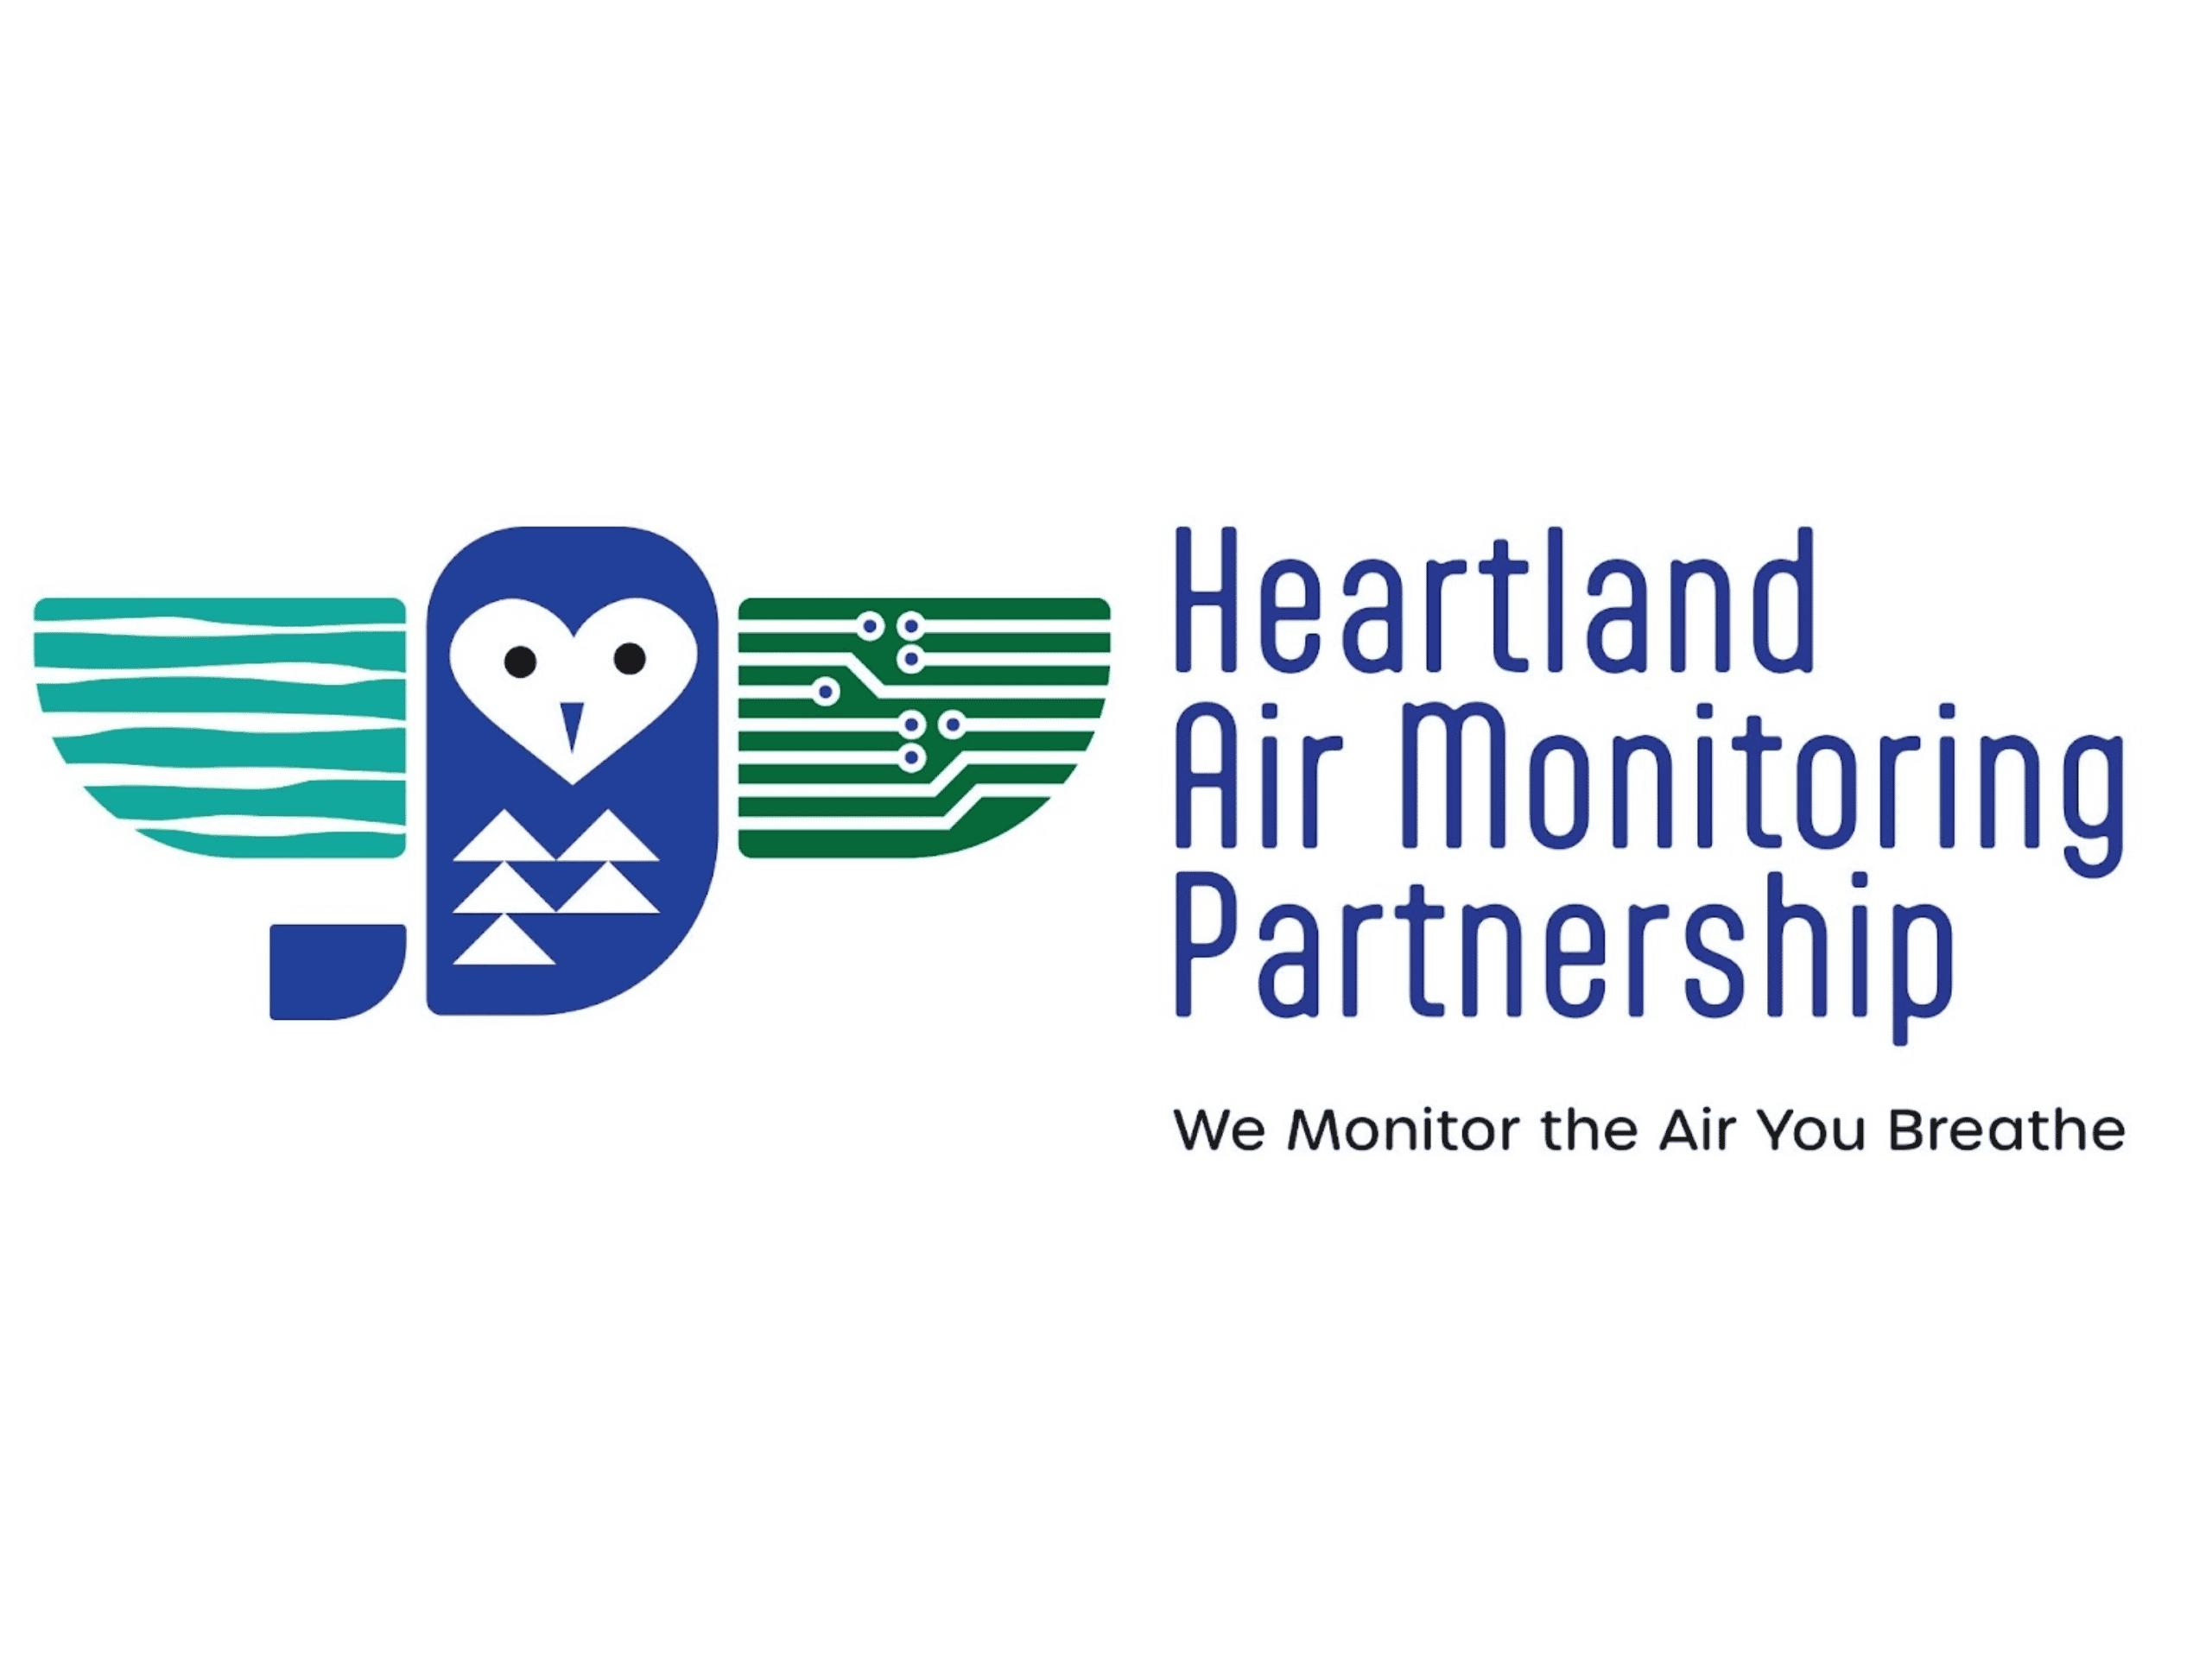 Heartland Air Monitoring Partnership.